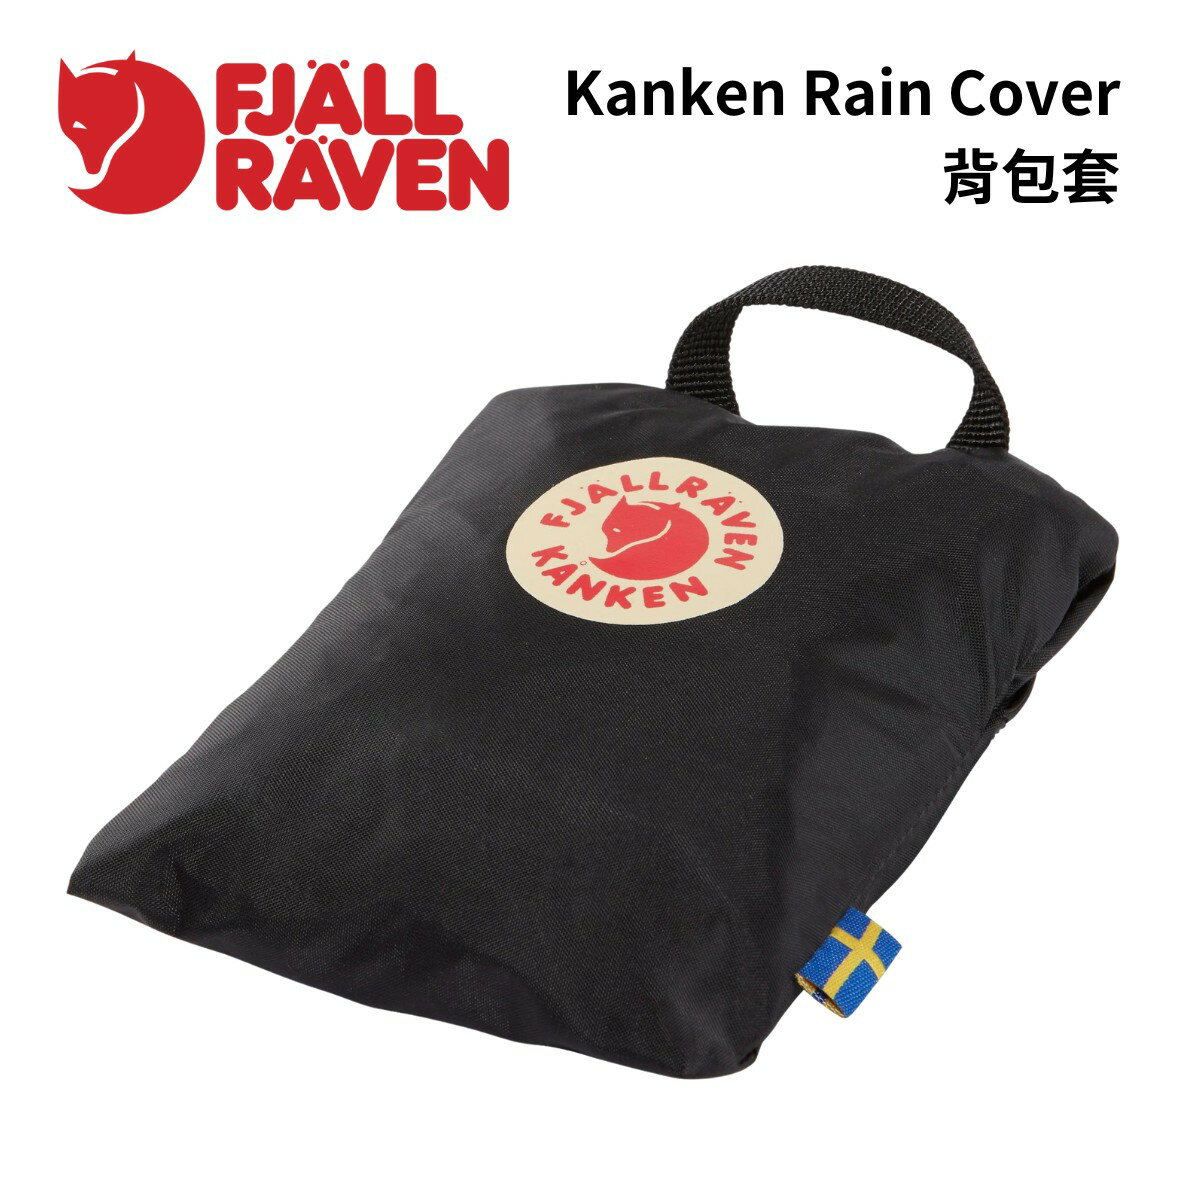 【Fjallraven】Kanken Rain Cover 背包套